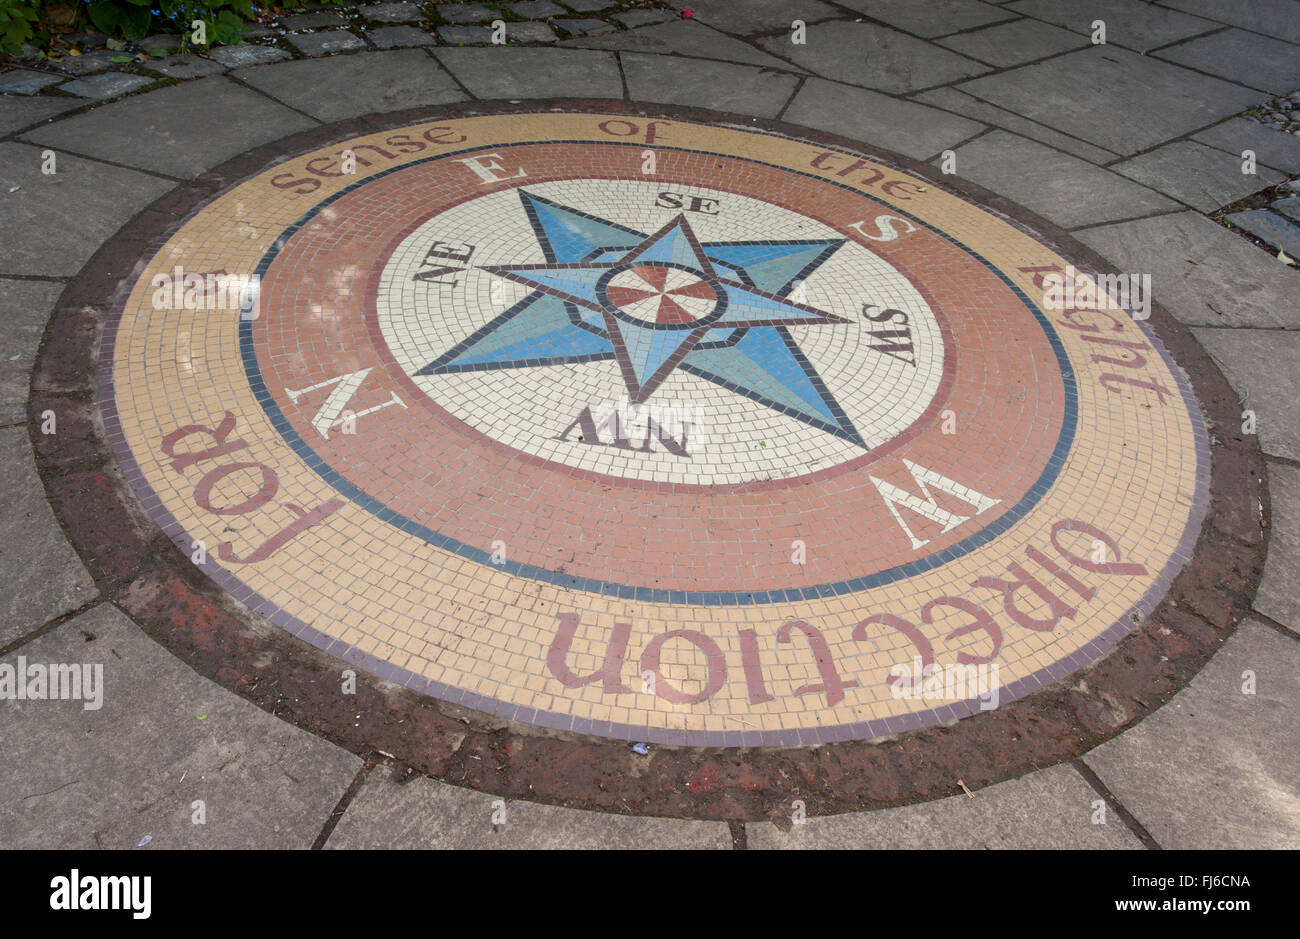 Pequeño patio circular Jardín con una brújula circular mosaico de azulejos establecido en un patio pavimentado de piedra que muestra direcciones Reino Unido Foto de stock